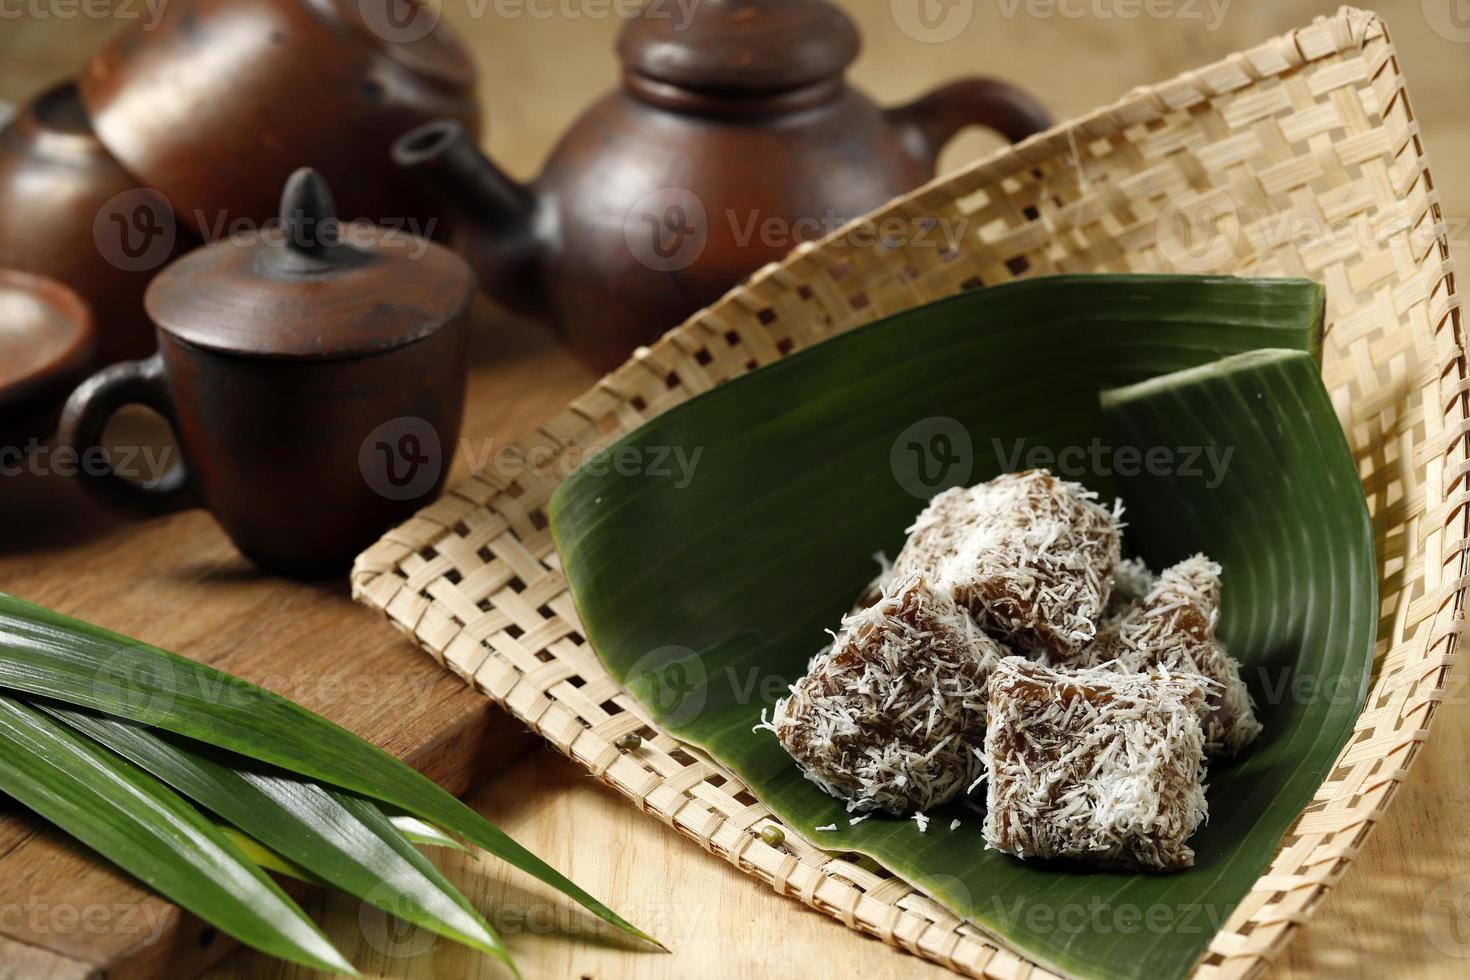 ongol-ongol, java occidental, indonesia bocadillo tradicional elaborado con harina de sagú y azúcar moreno, cubierto con coco rallado foto